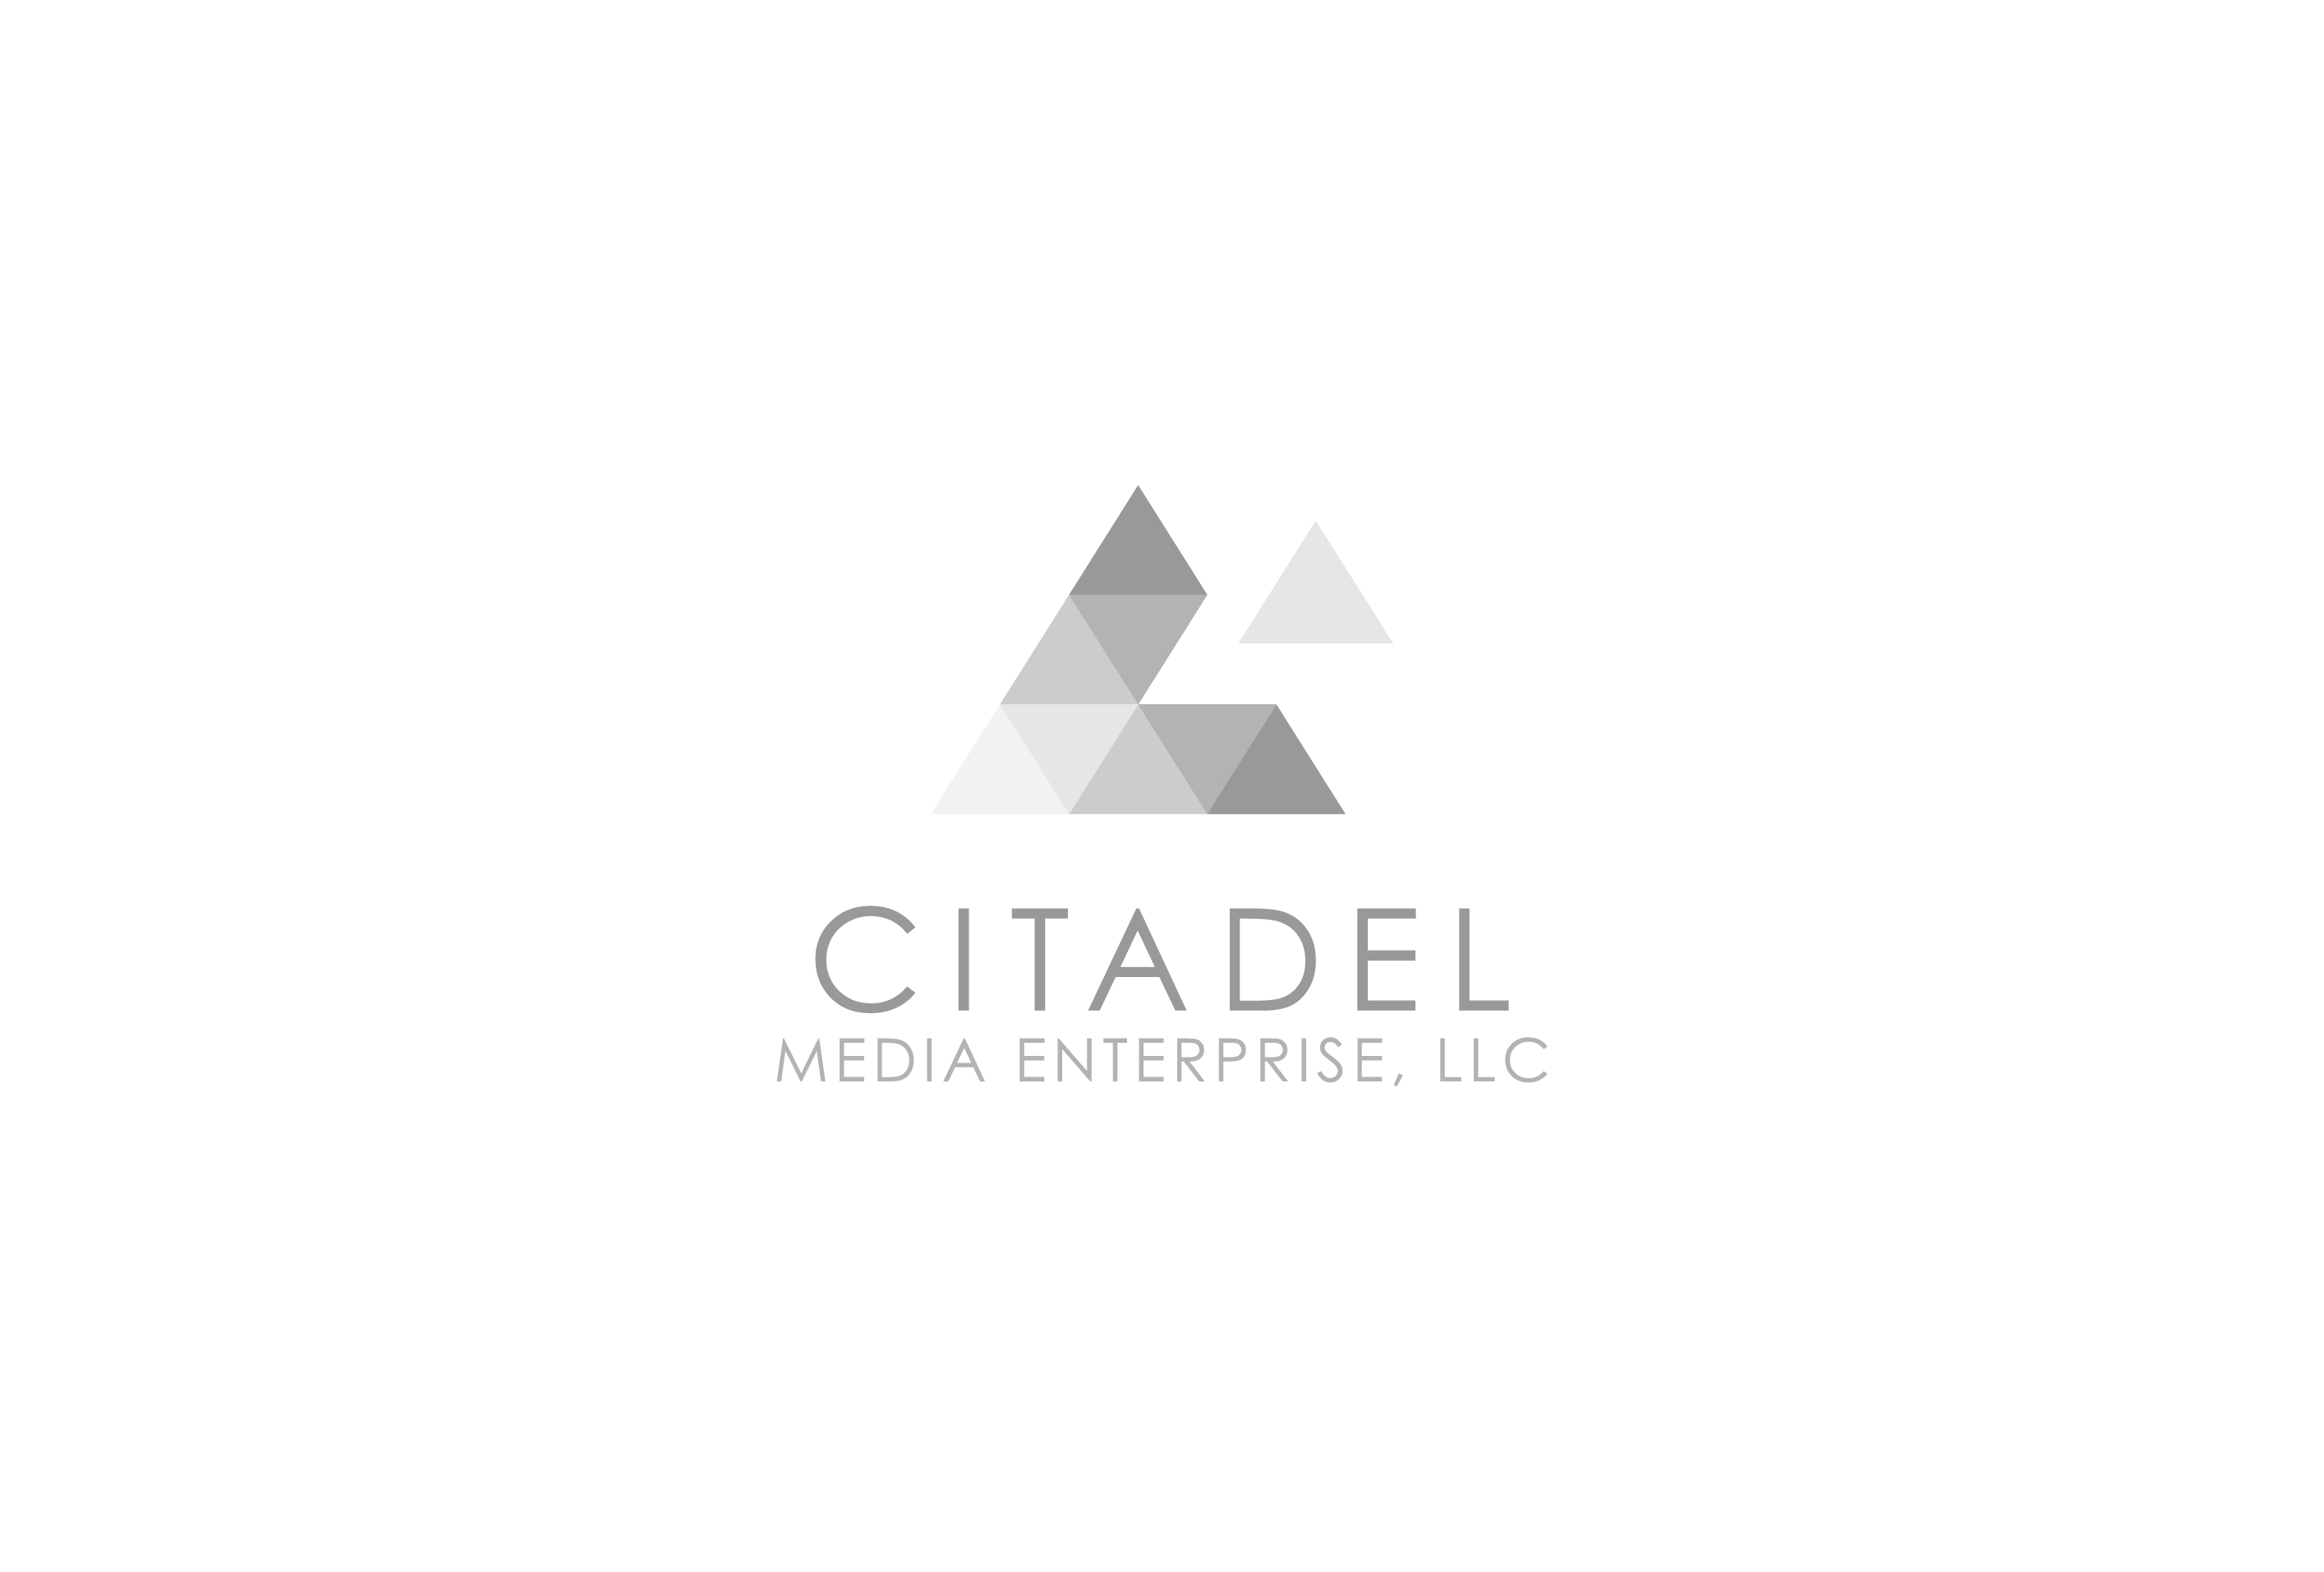 Citadel Media Enterprise, LLC